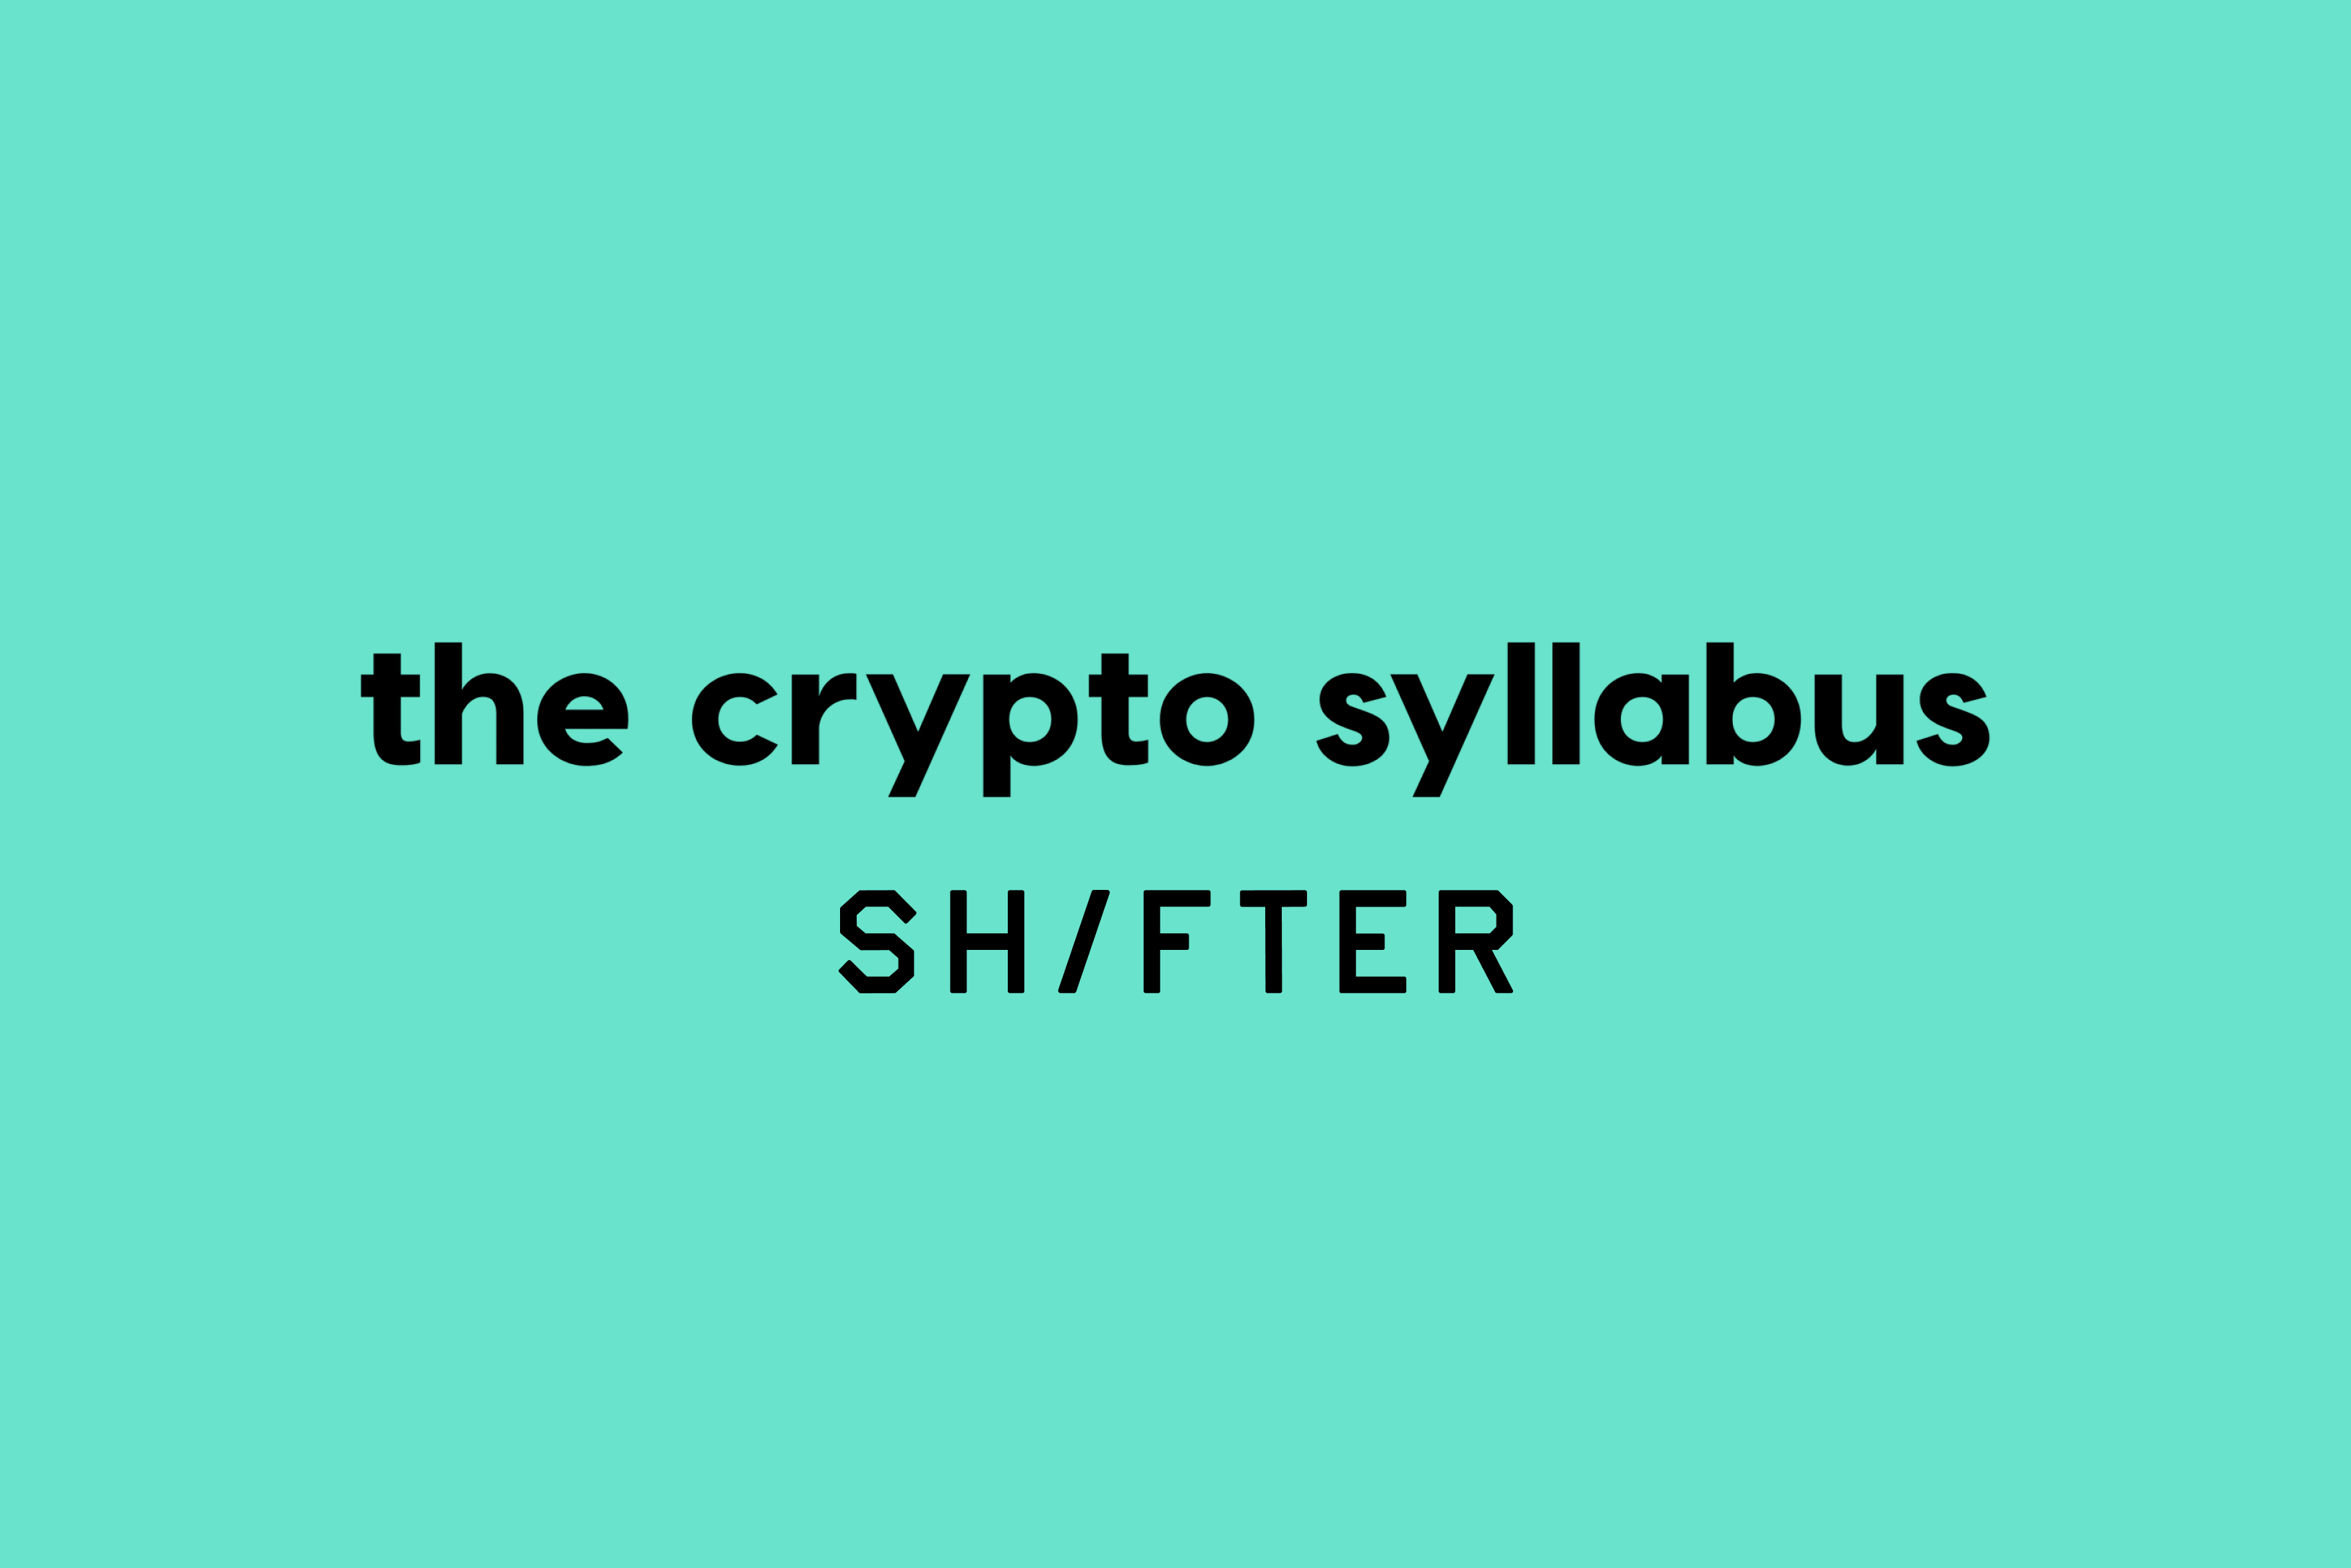 Shifter junta-se ao The Crypto Syllabus para publicação em ...